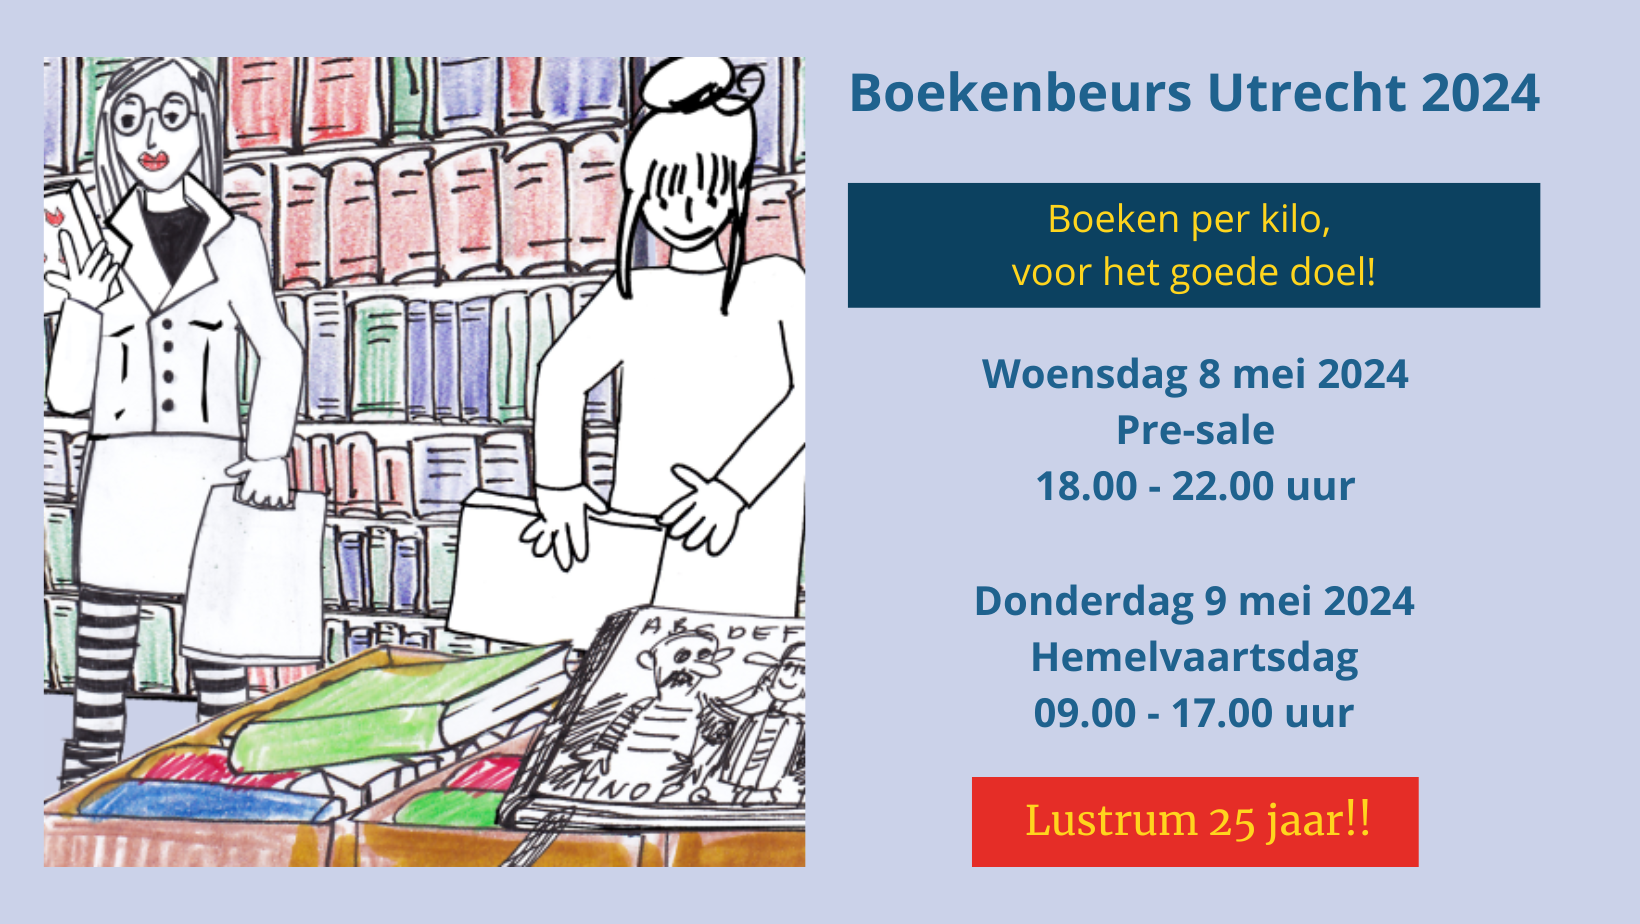 Boekenbeurs Utrecht